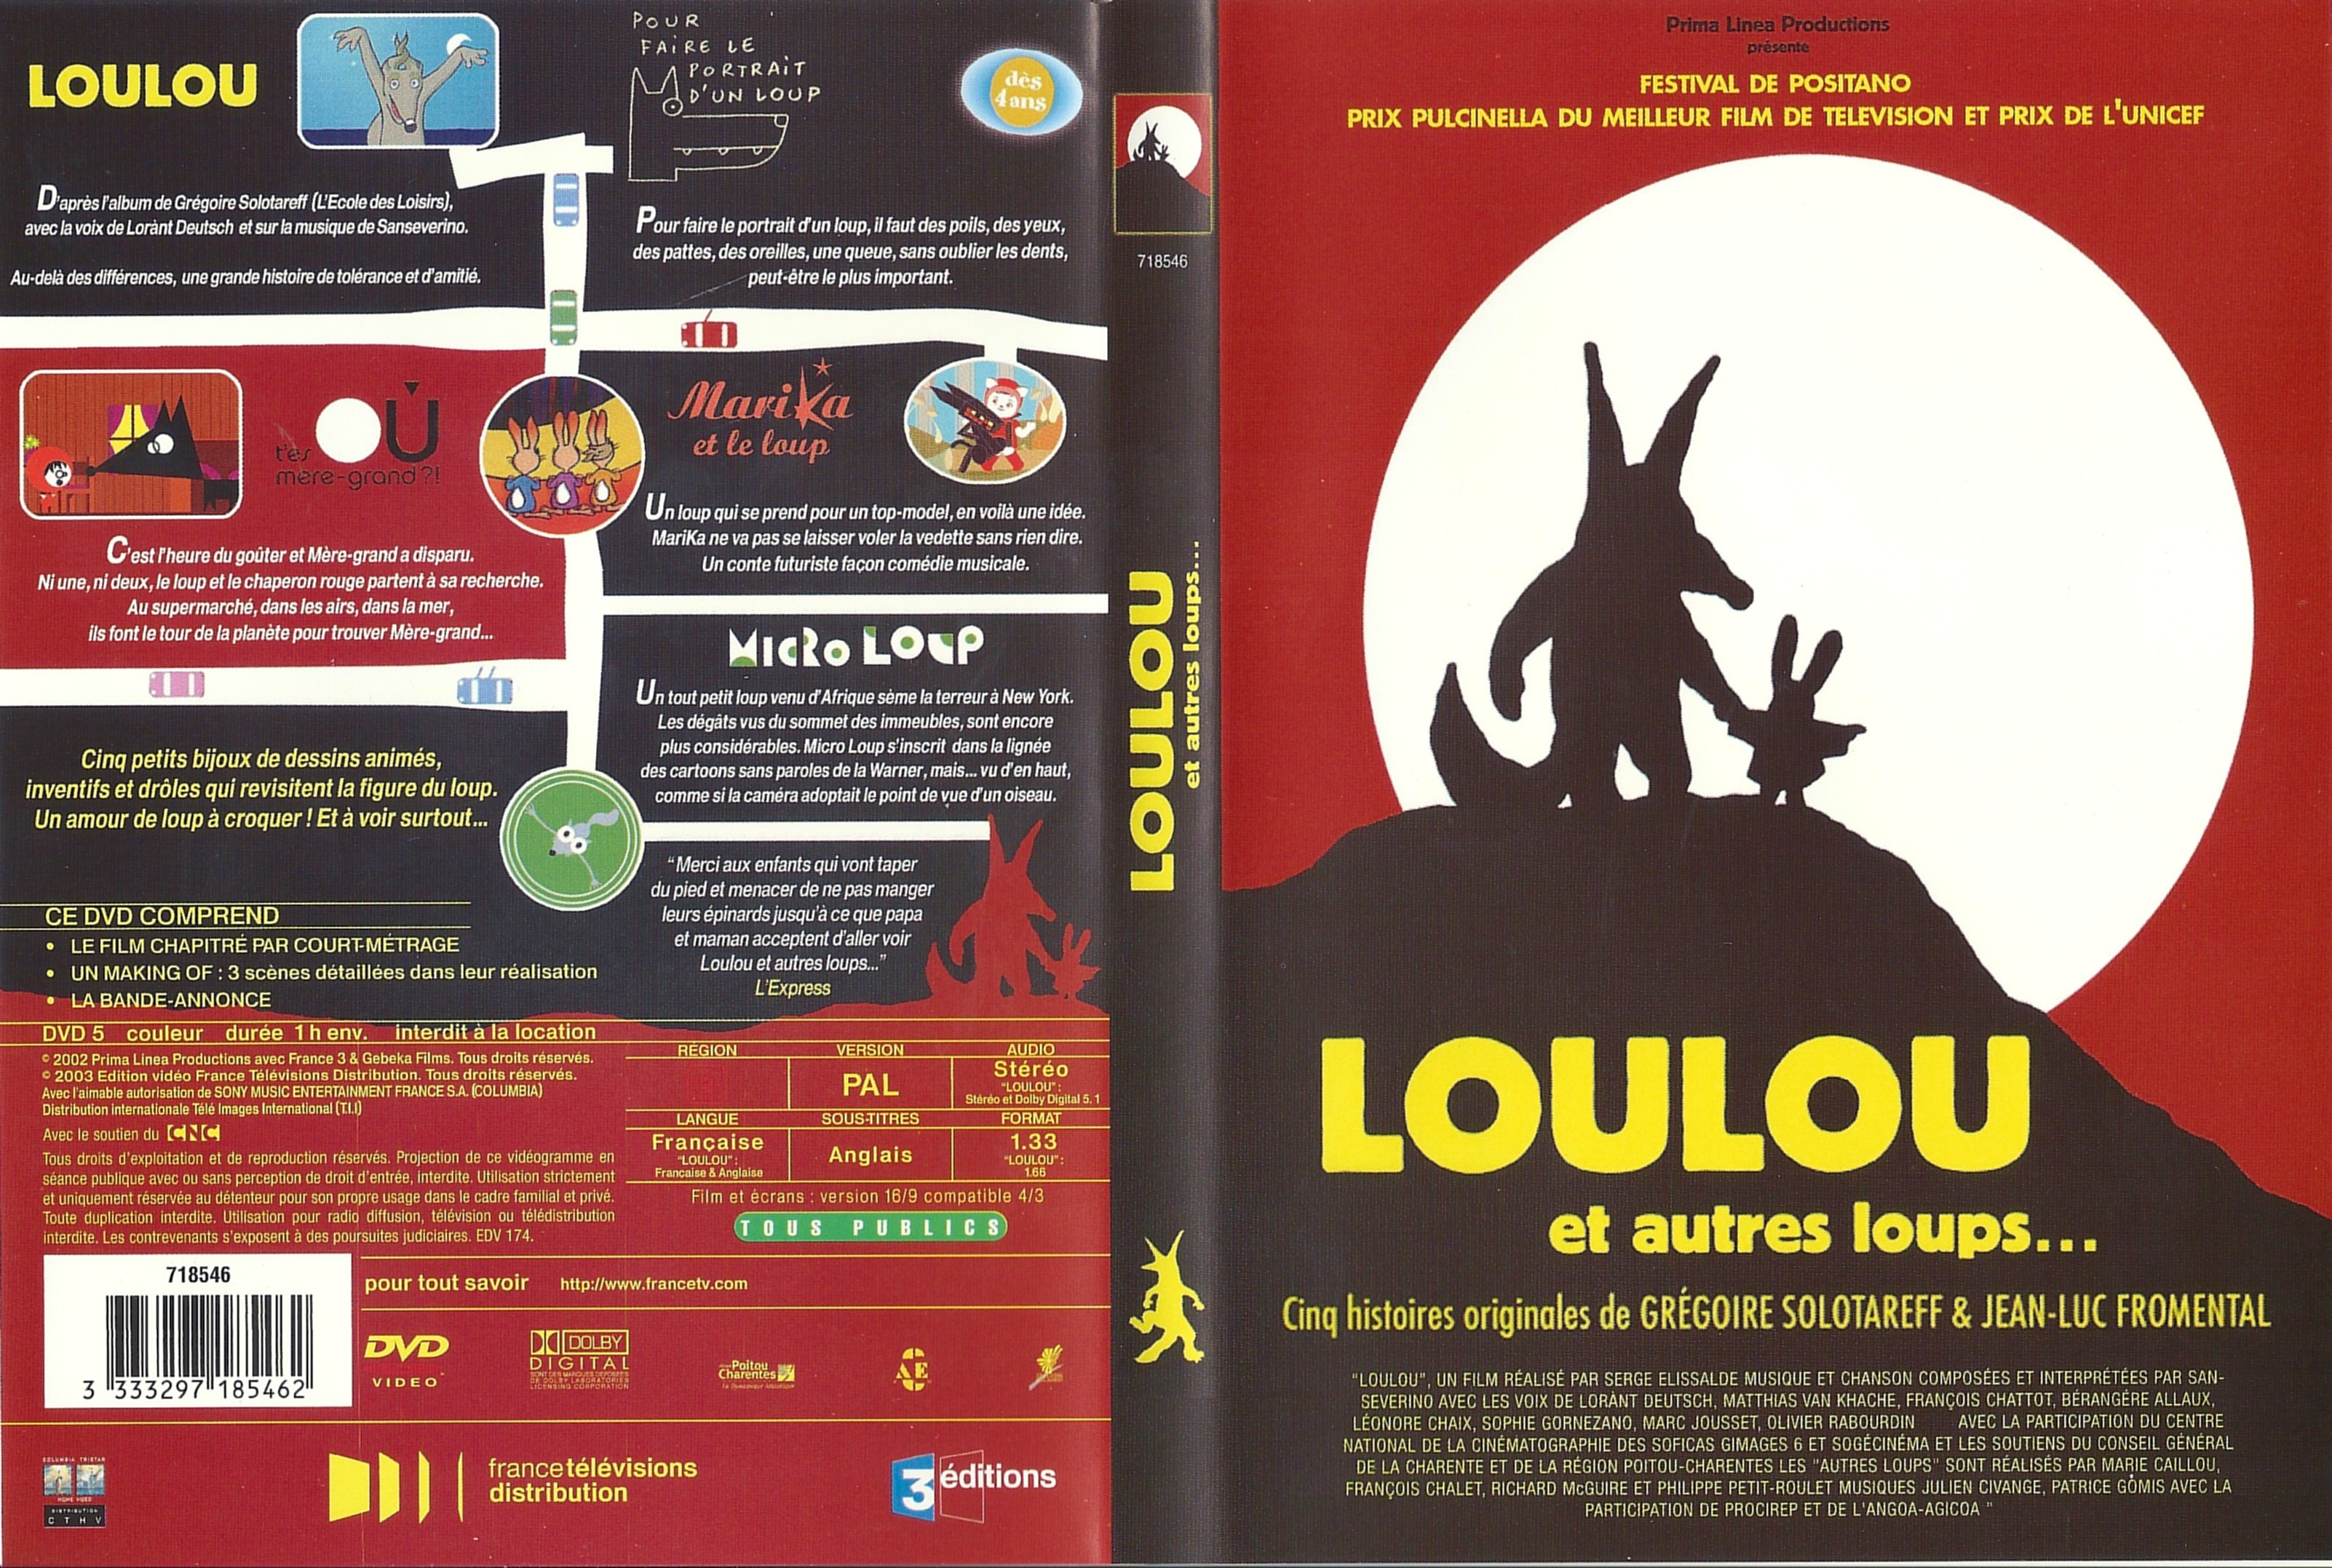 Jaquette DVD Loulou et autres Loups